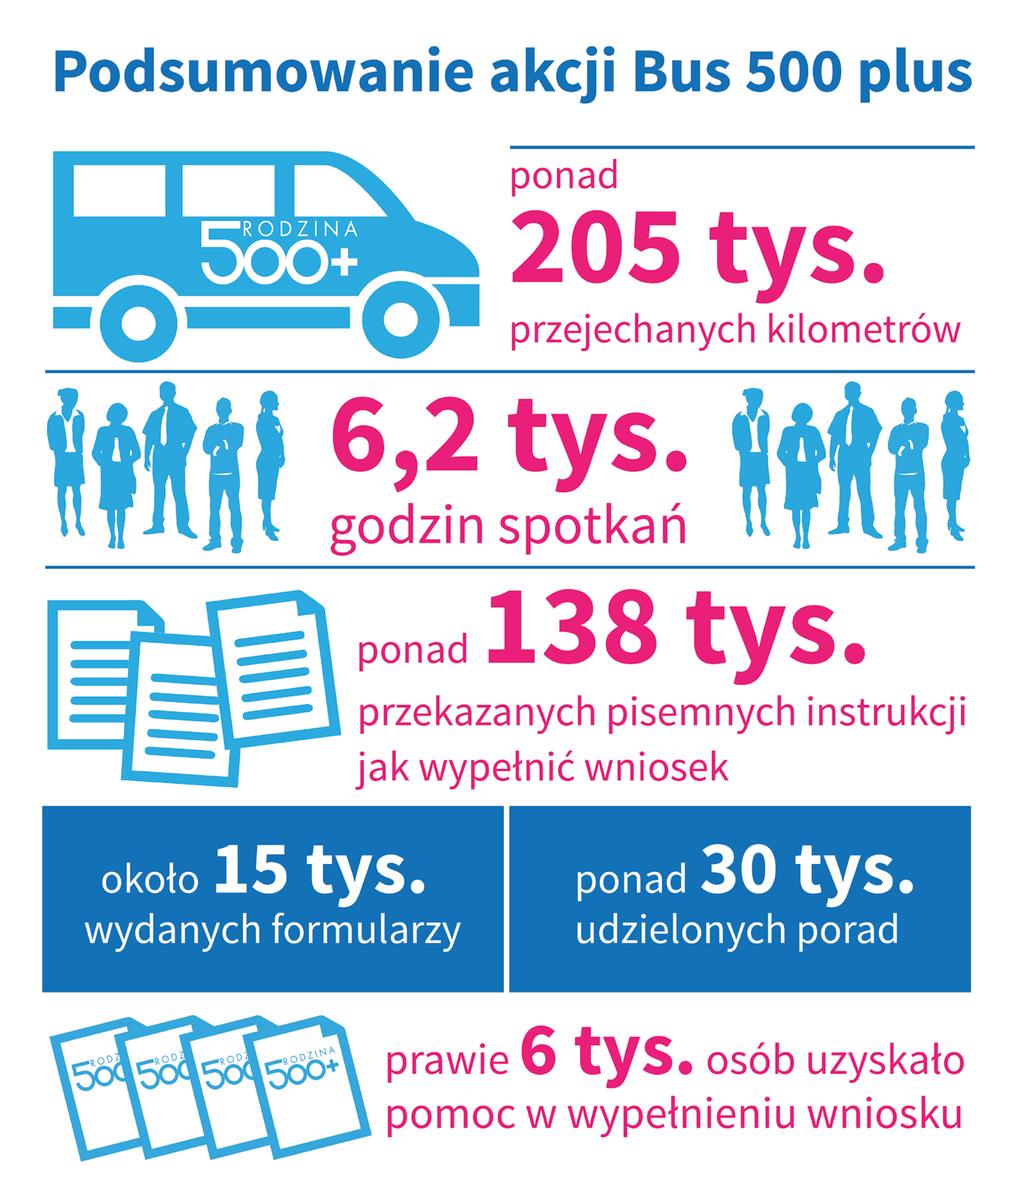 Wraz ze startem programu ruszyła szeroka akcja informacyjna w regionach. W Polskę ruszyły busy 500 plus.